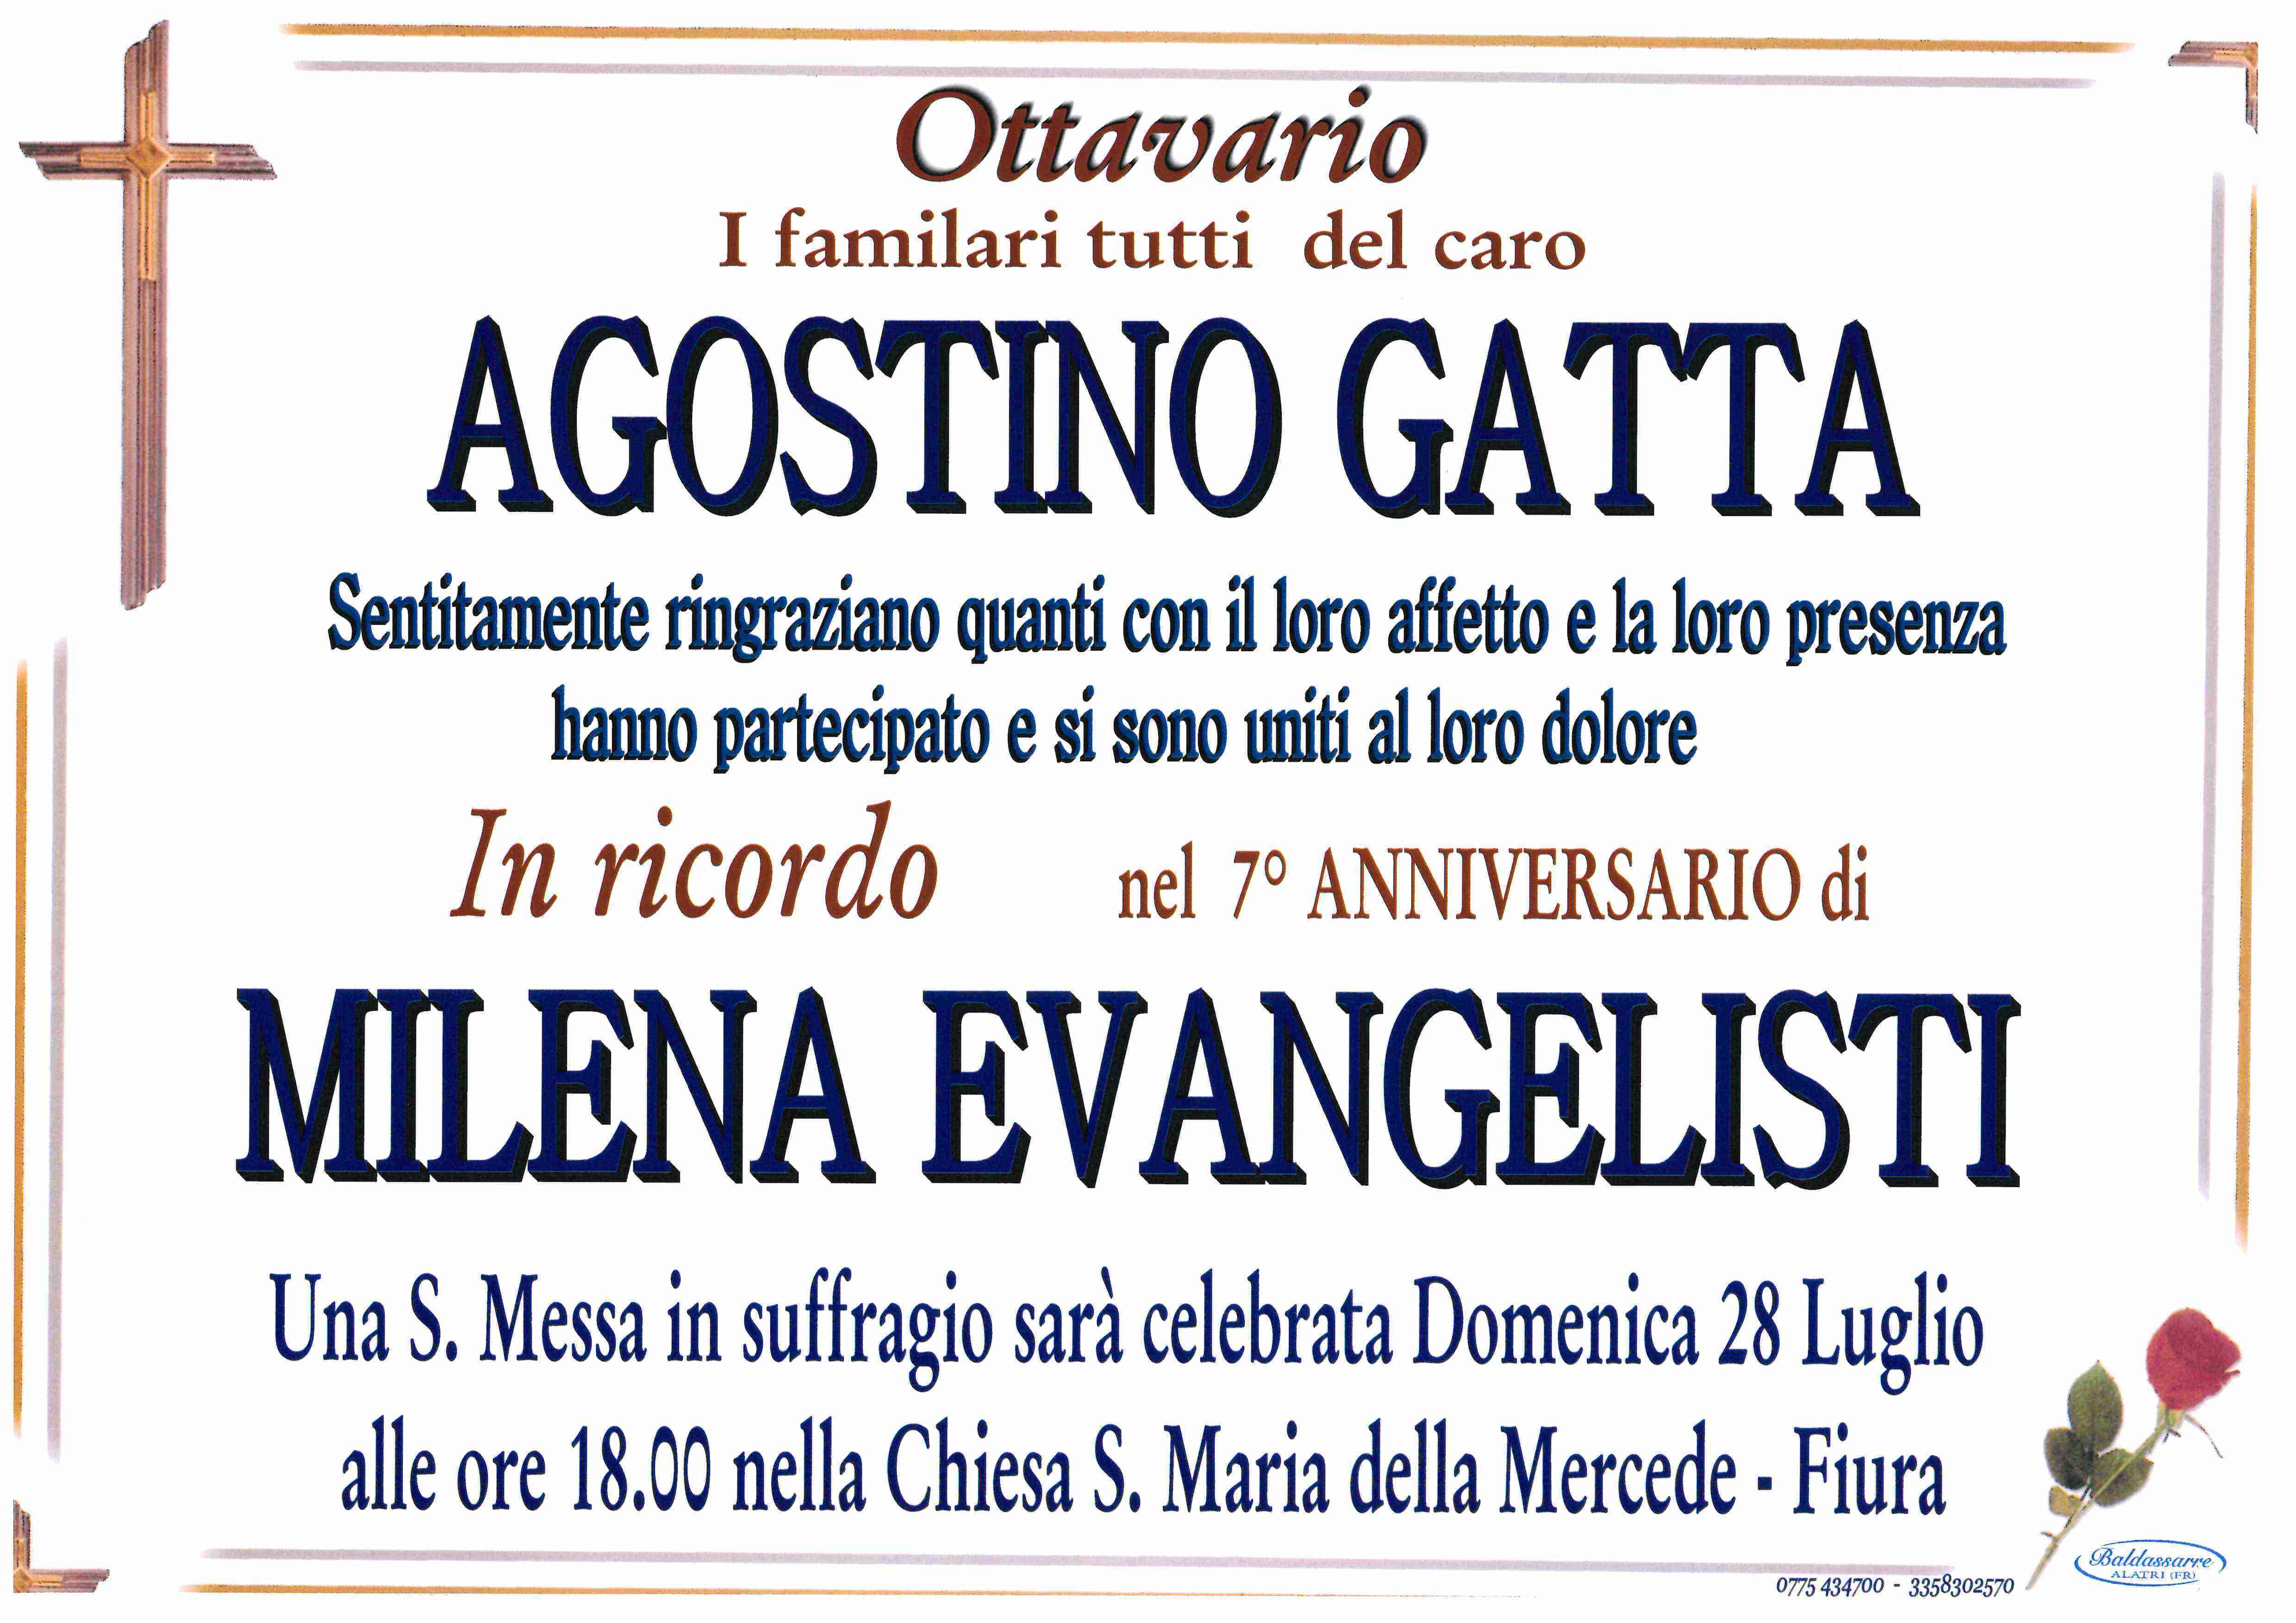 Agostino Gatta